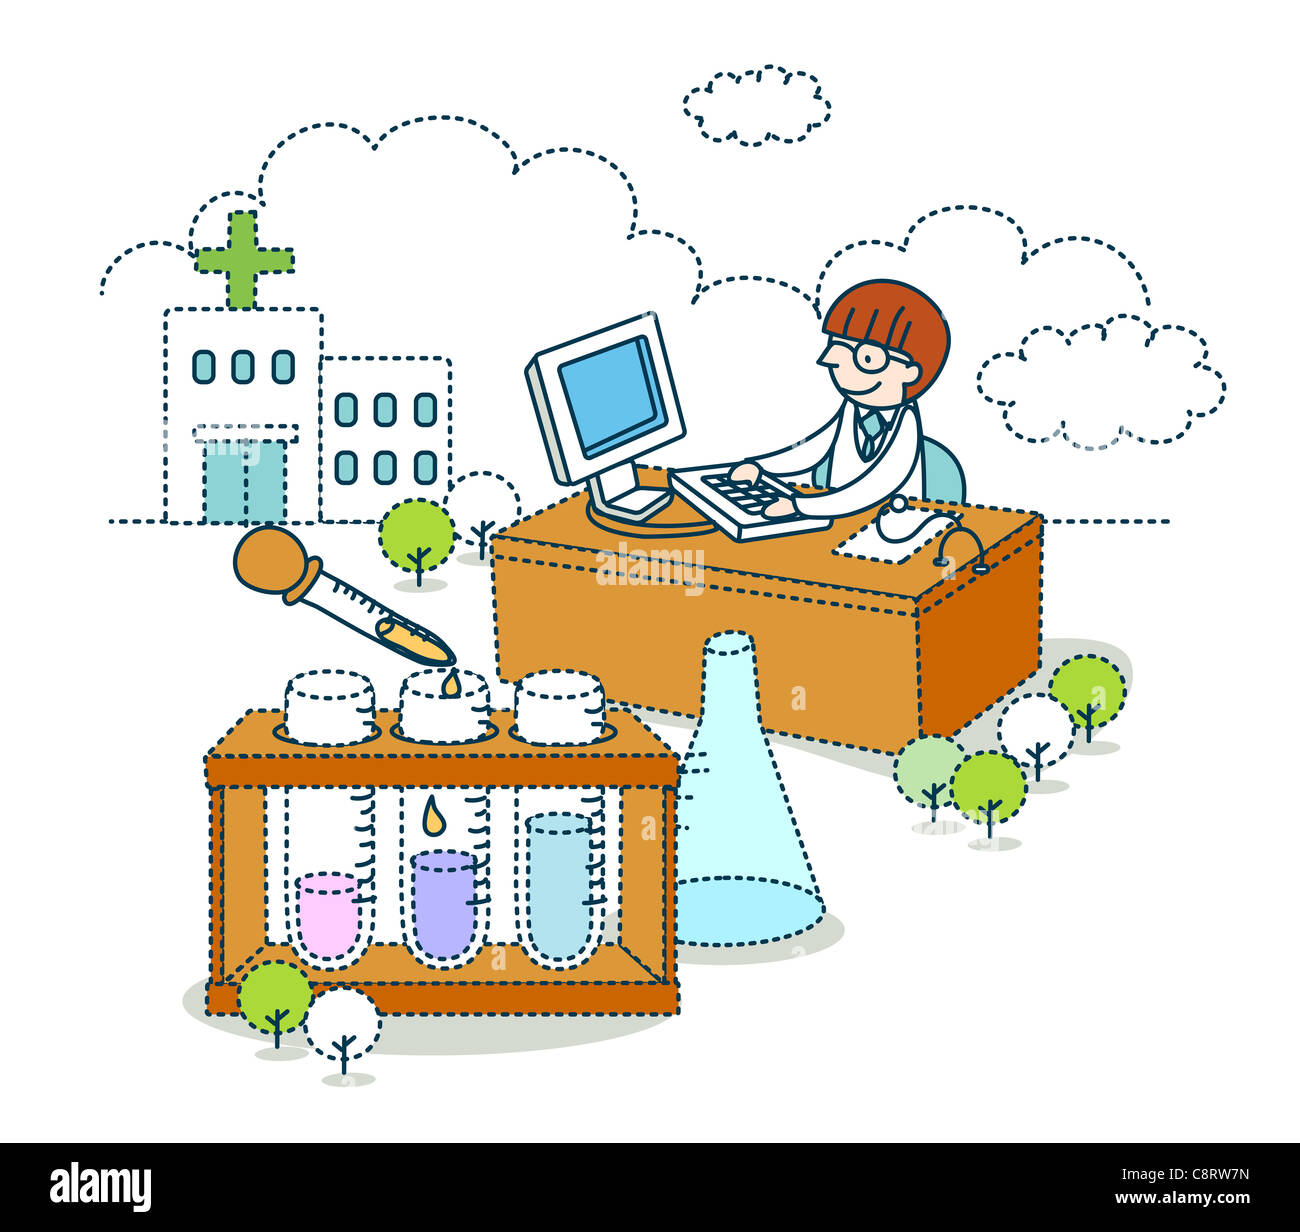 Illustration du médecin à l'aide d'ordinateur contre des tubes à essai Banque D'Images